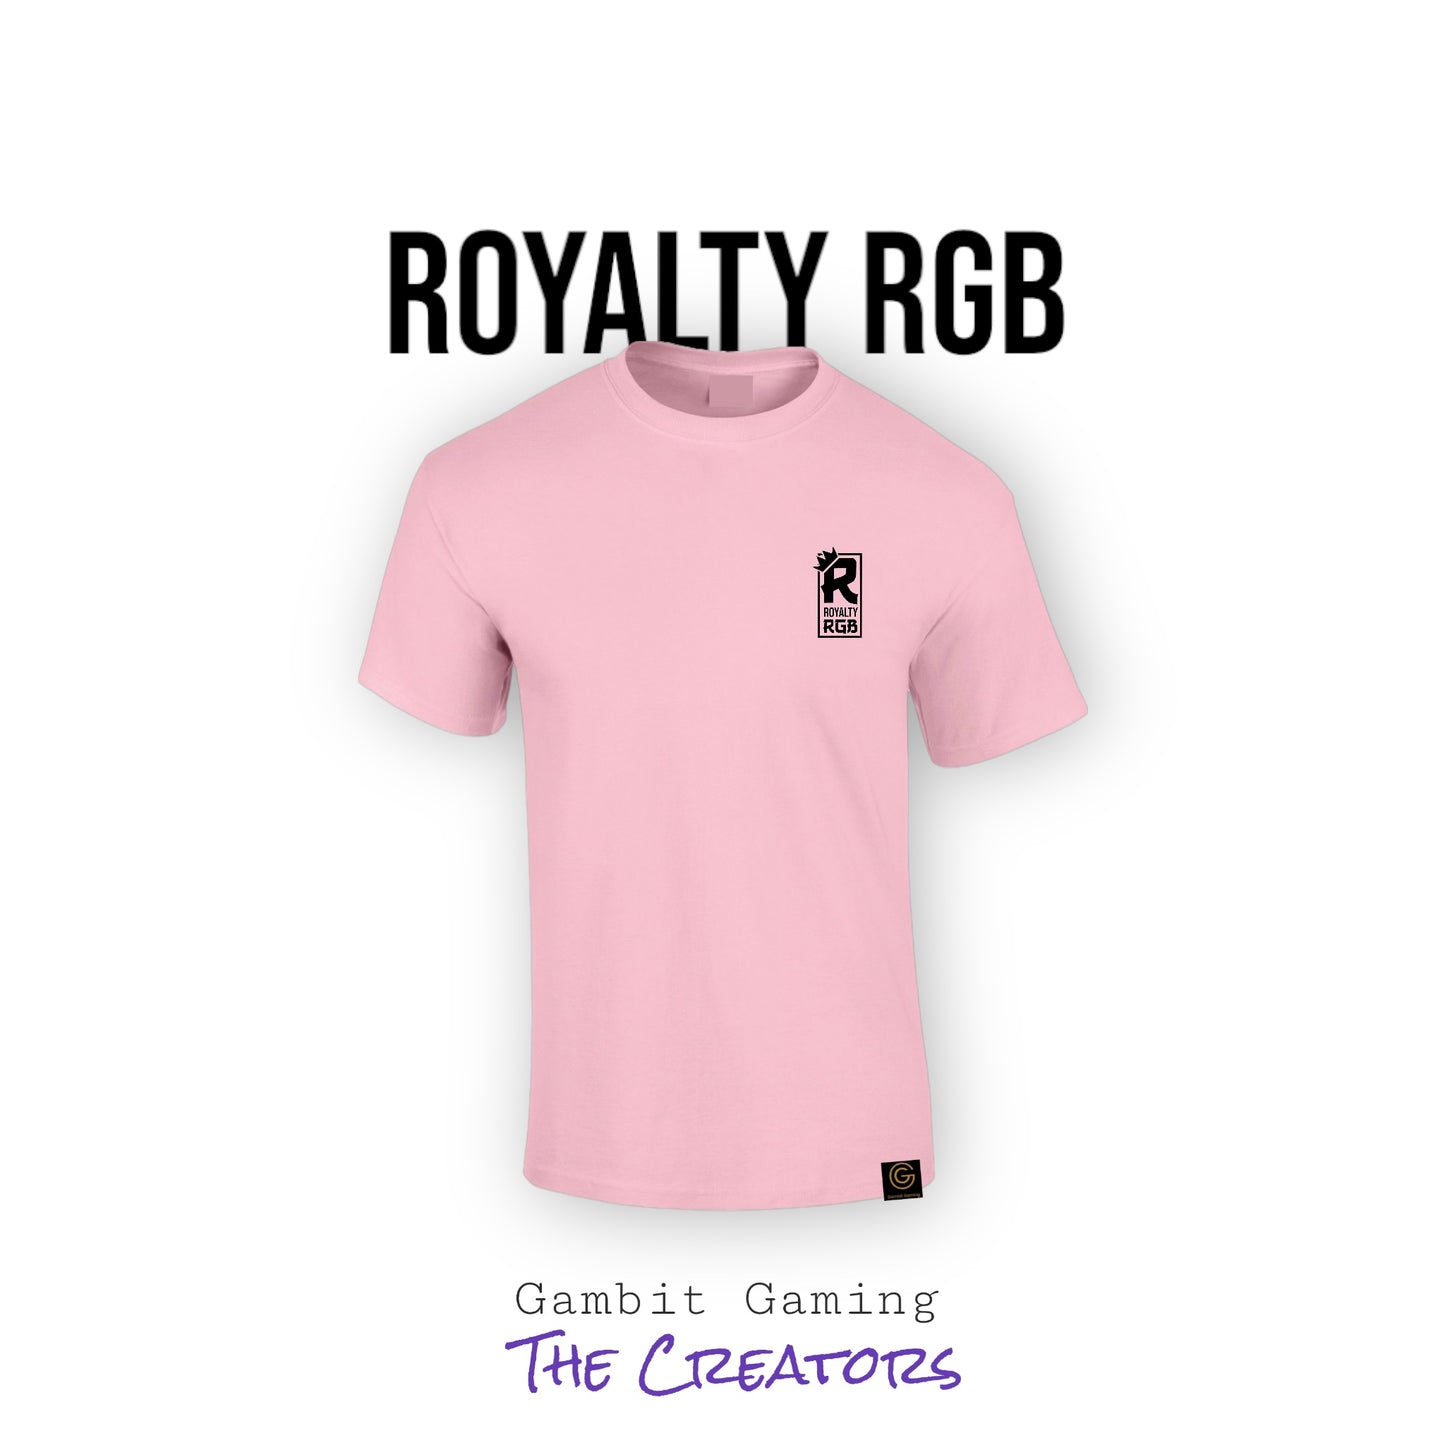 Royalty RGB - Gambit Gaming